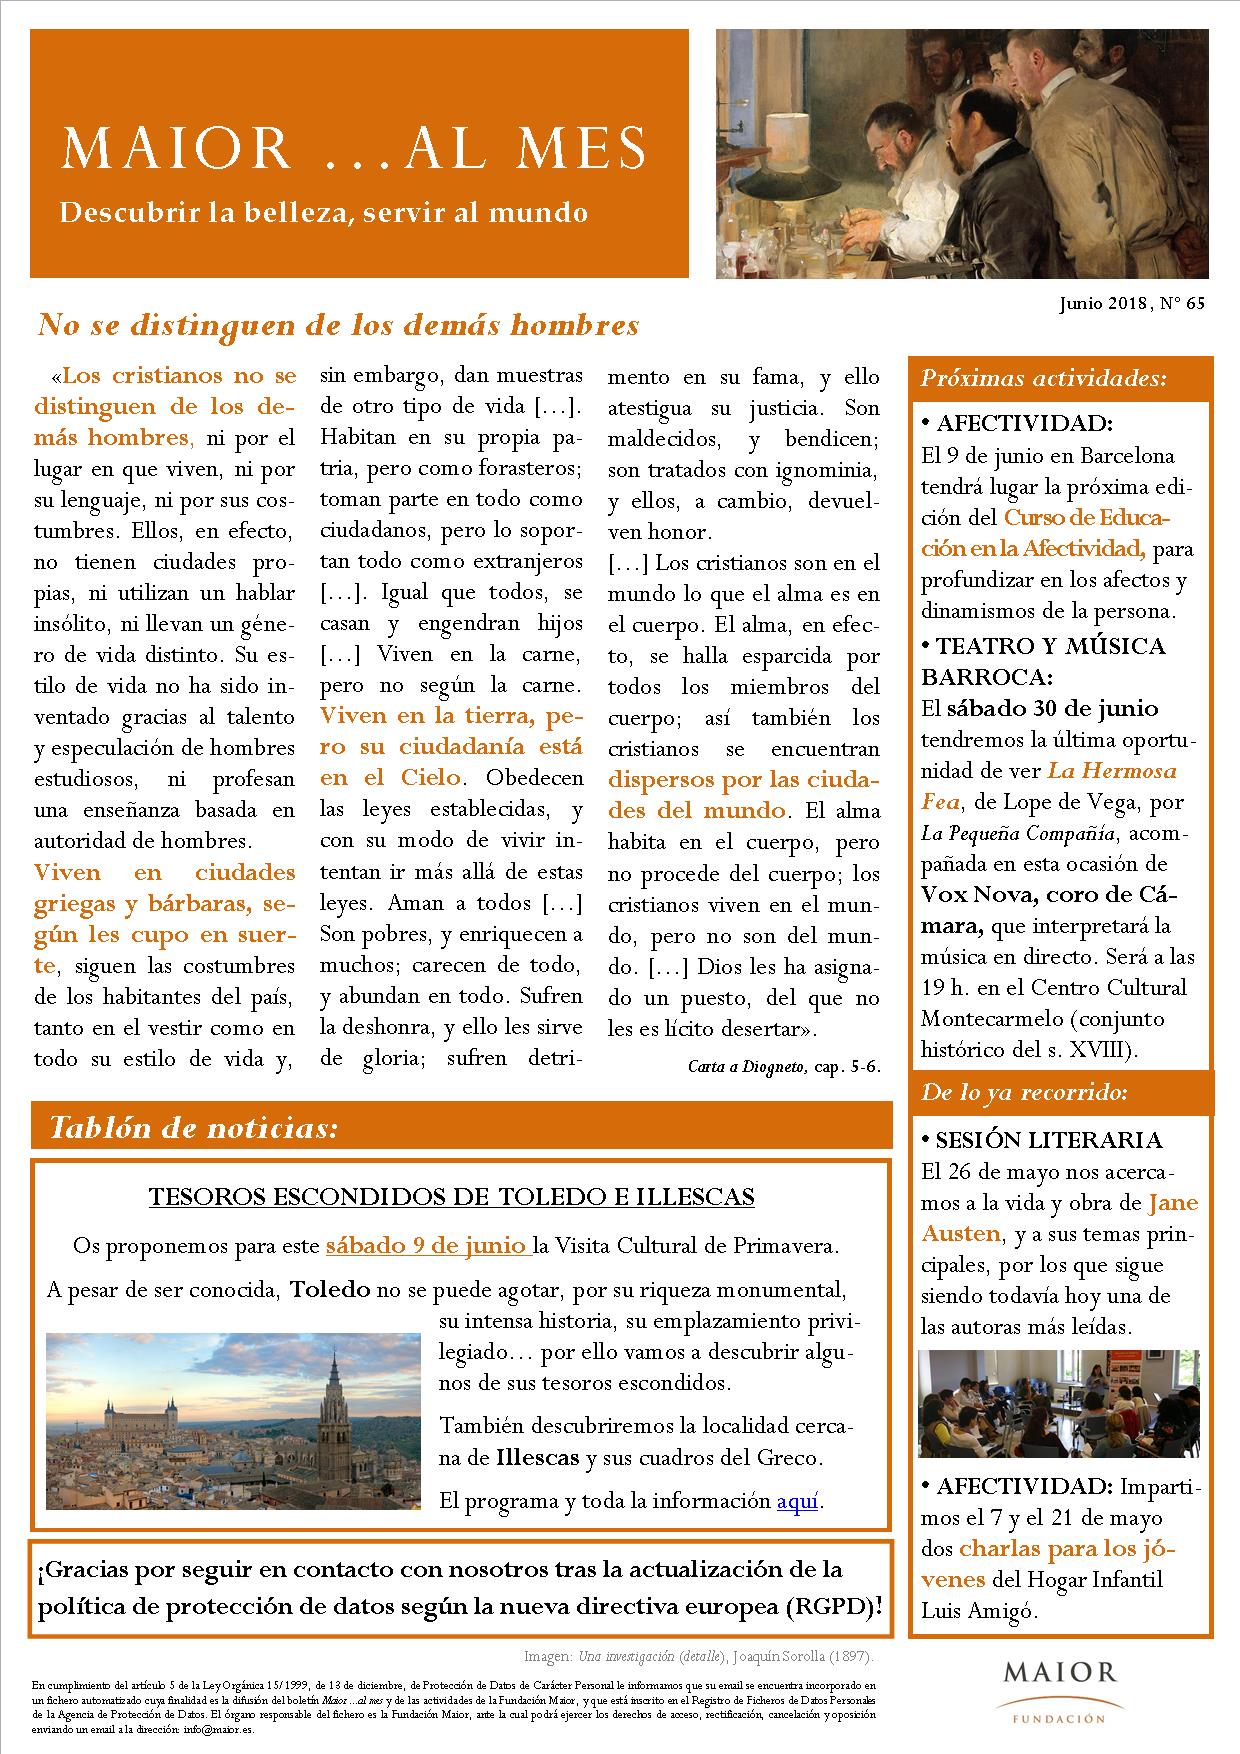 Boletín mensual de noticias y actividades de la Fundación Maior. Edición de junio 2018